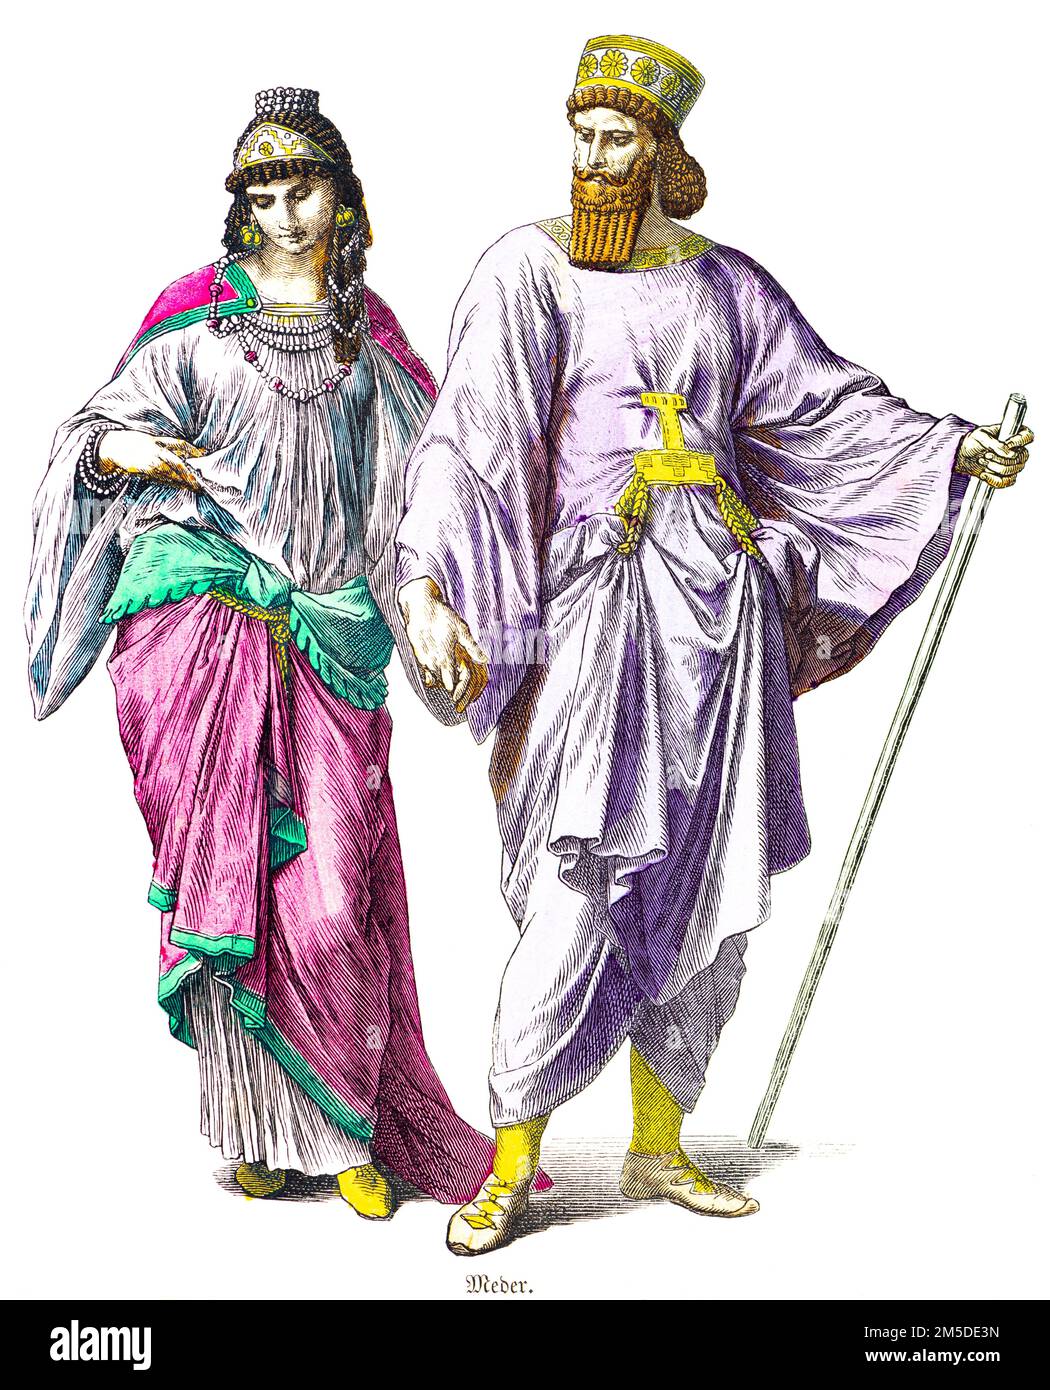 Costumes historiques du couple ta Mede, illustration historique colorée, Münchener Bilderbogen, München 1890 Banque D'Images